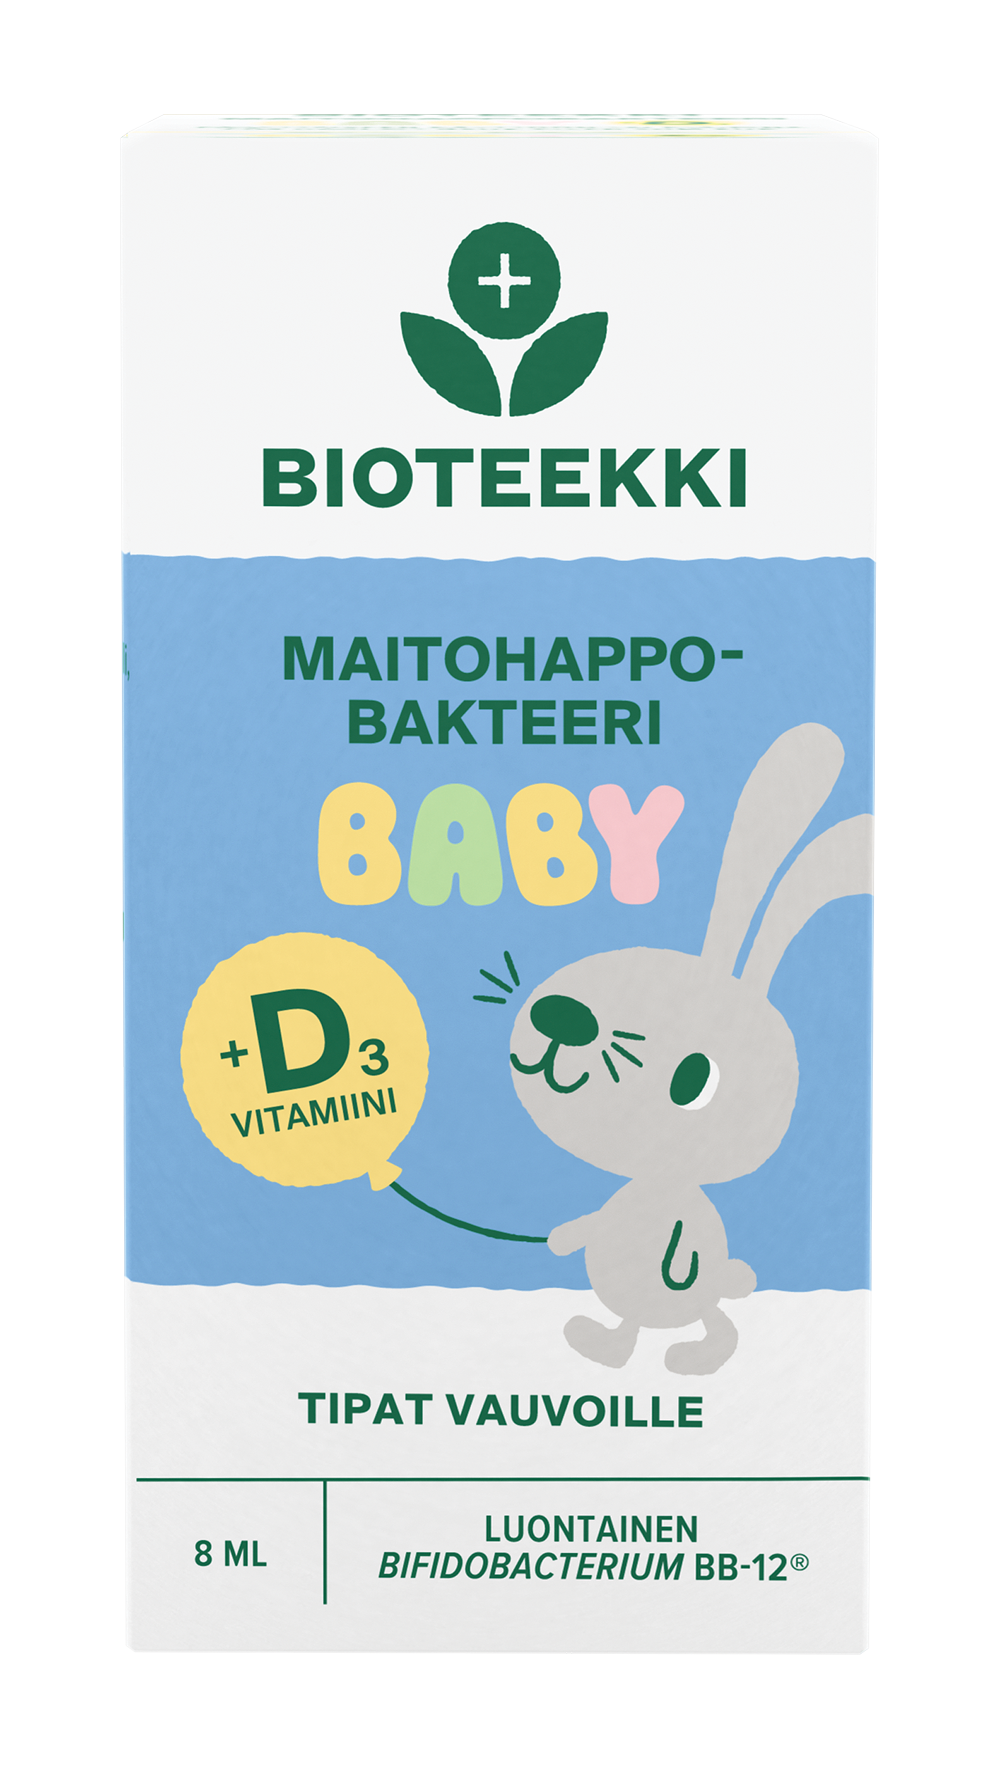 BIOTEEKKI MAITOHAPPOBAKTEERI  BABY + D3  – TIPAT